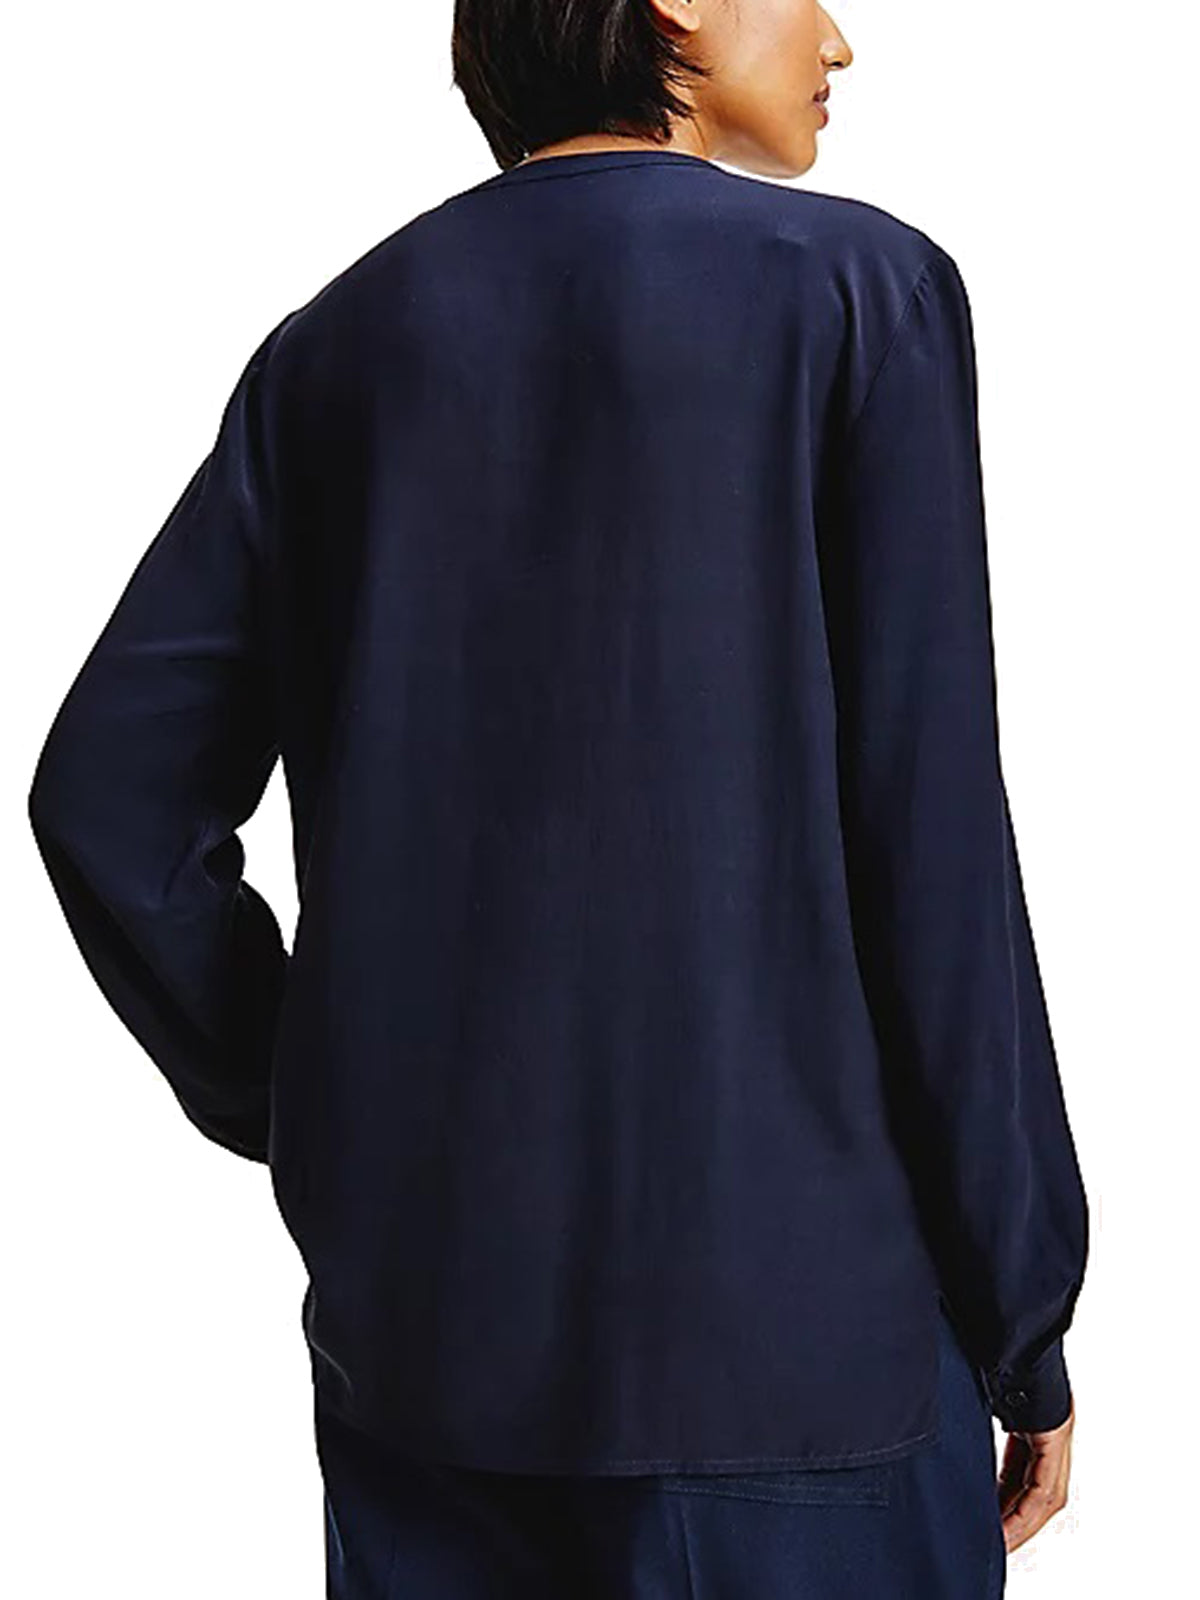 Bluse e camicie Donna Tommy Hilfiger - Viscose V-Neck Blouse - Blu